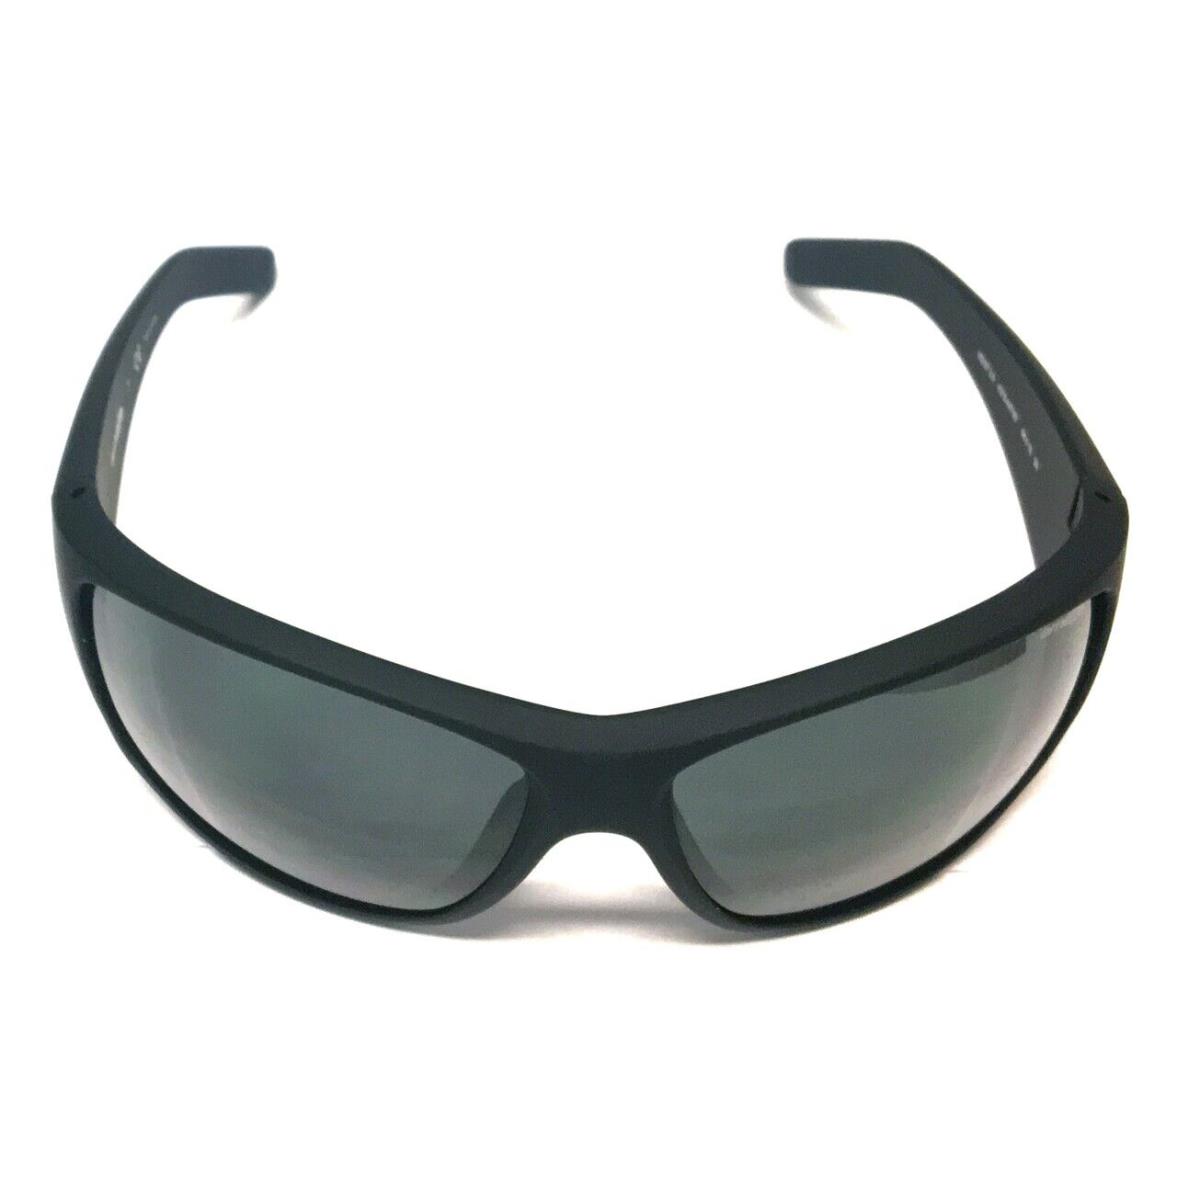 Arnette Heist 2.0 4215 447/87 Sunglasses Fuzzy Black with Gray Lenses